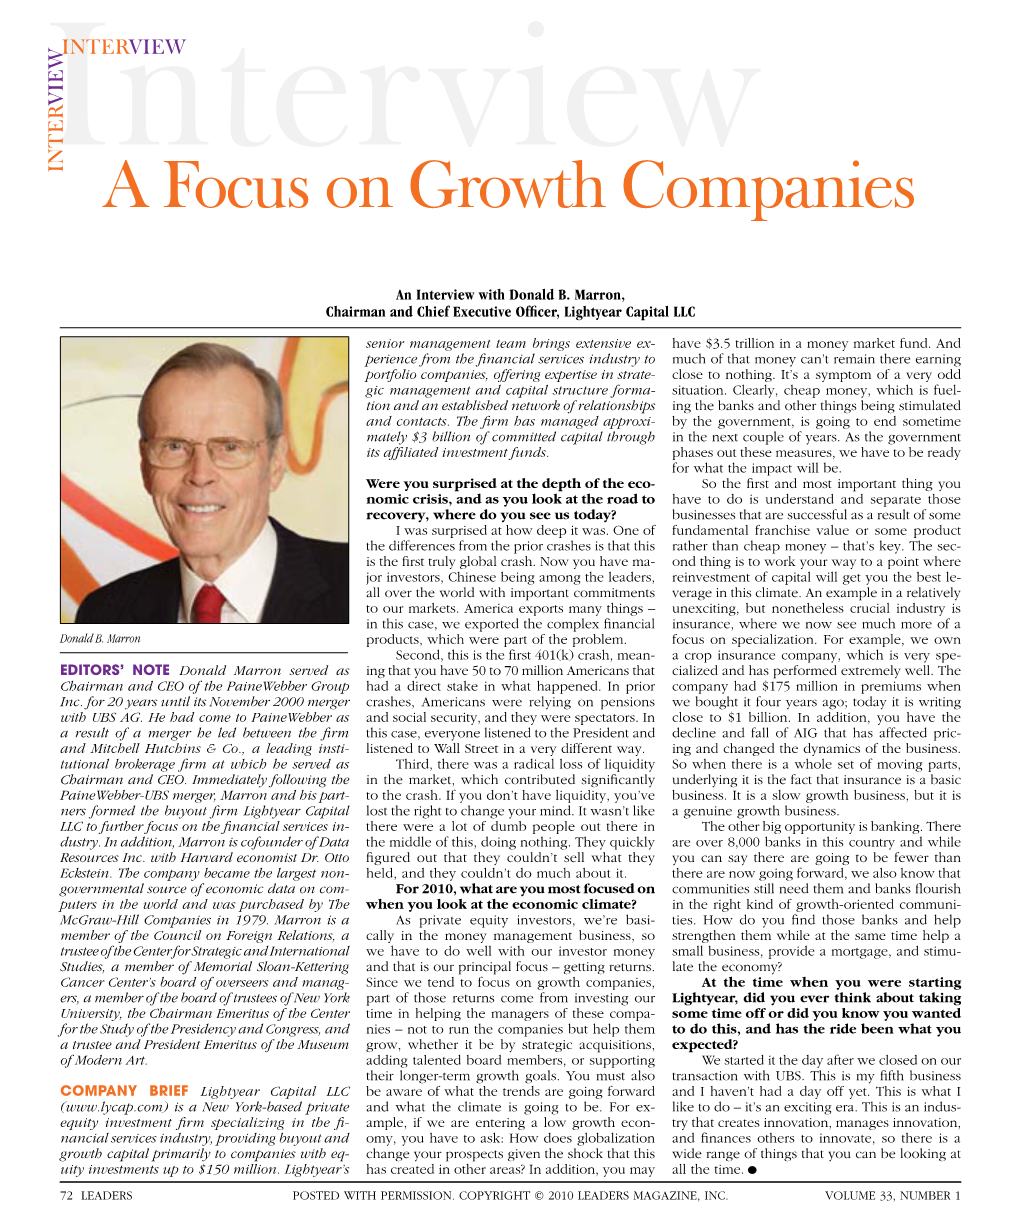 A Focus on Growth Companies